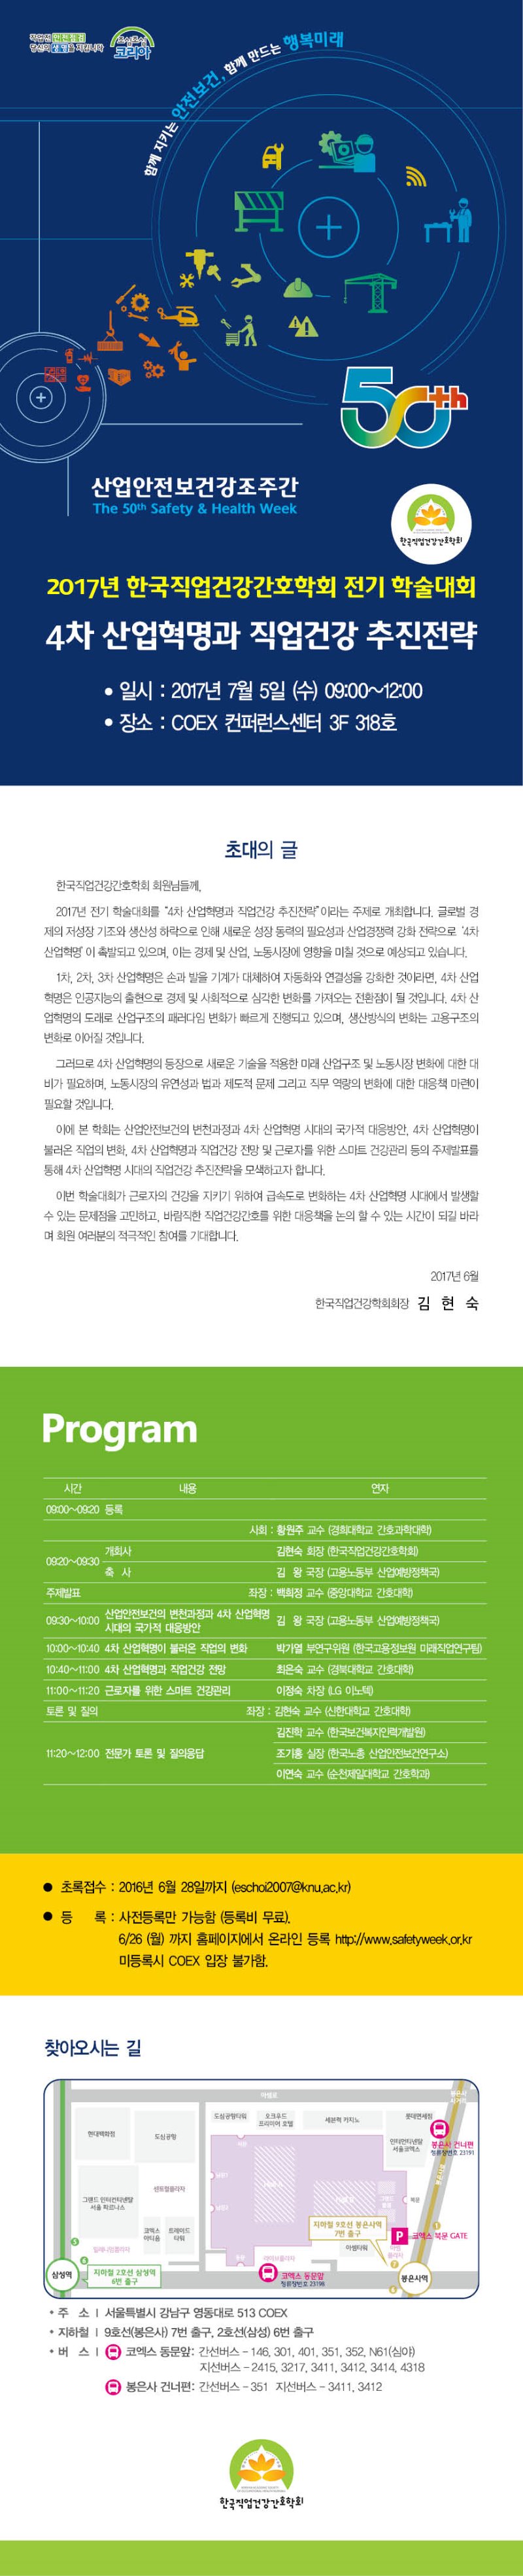 첨부 1 2017년 한국직업건강간호학회 전기학술대회 프로그램(초청장).jpg